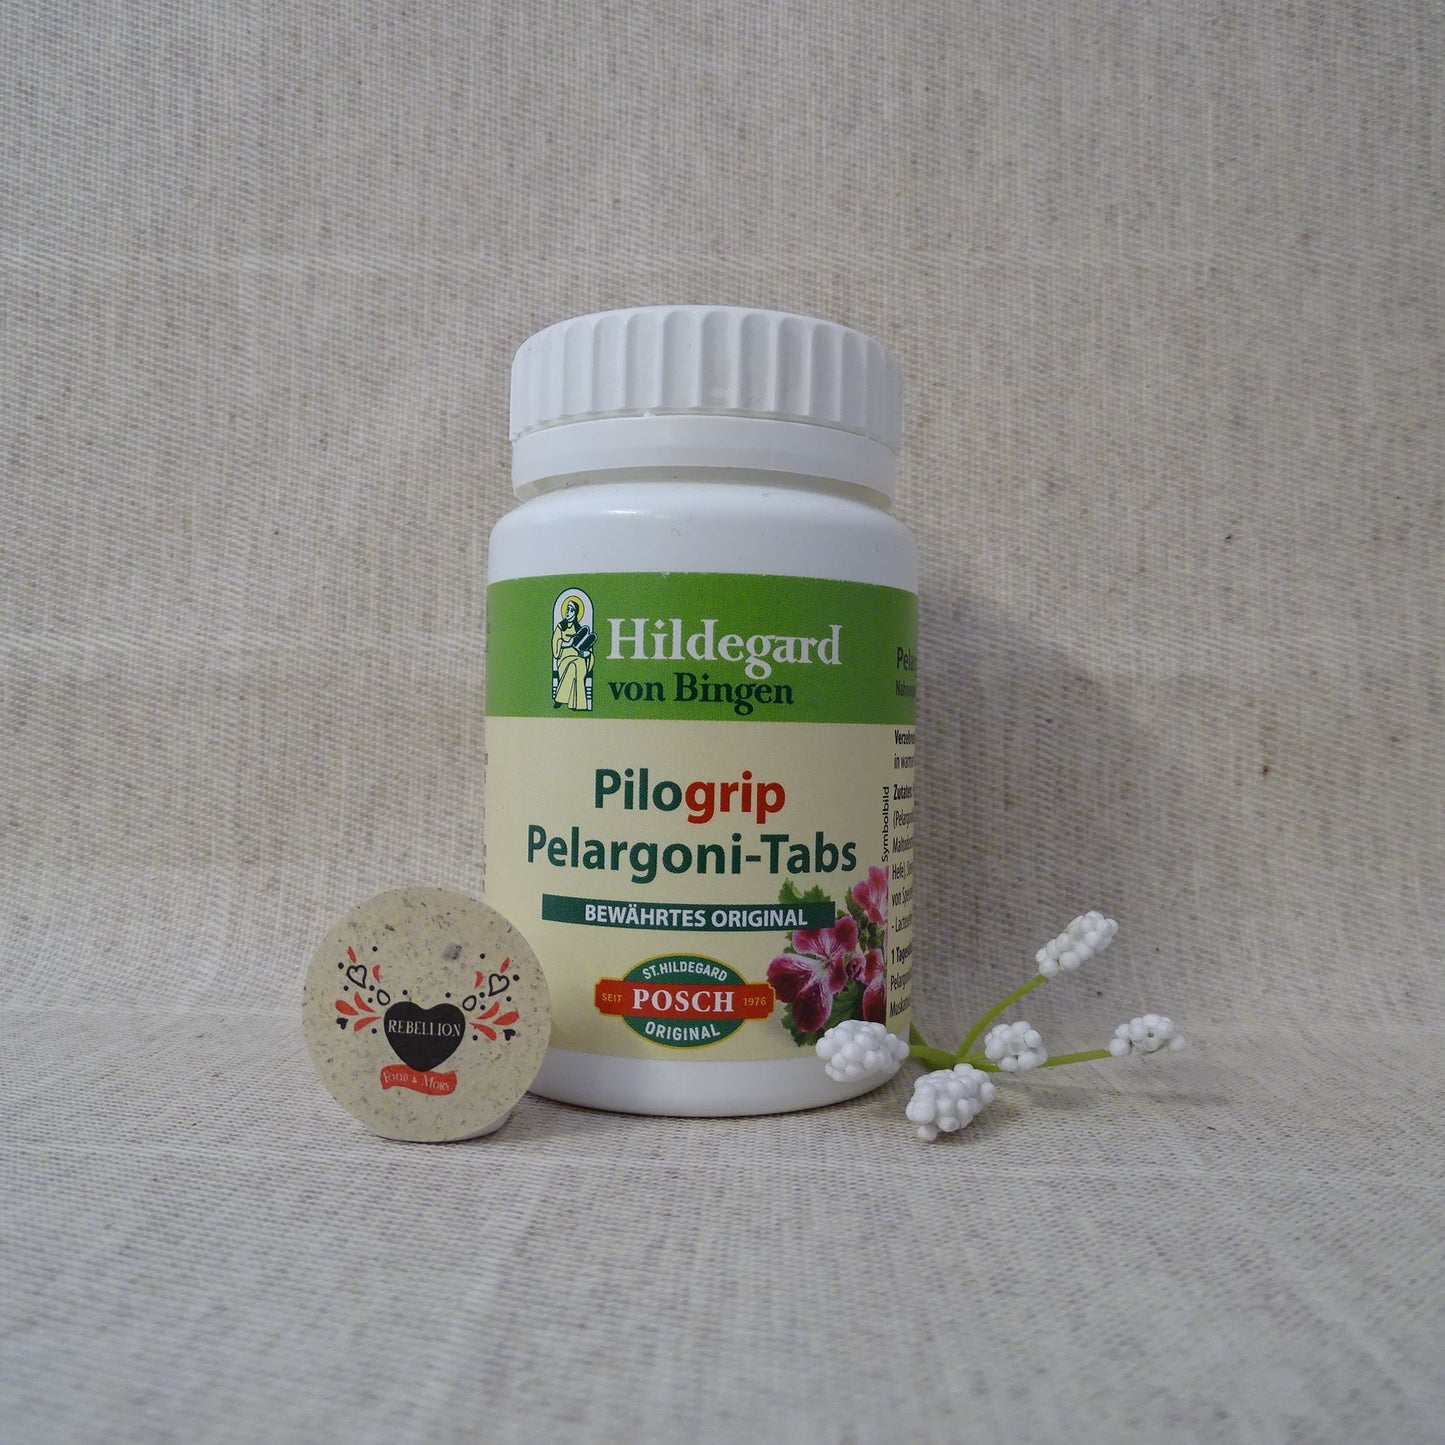 Pilogrip® Pelargoni-Tabs St.Hildegard Posch 25g